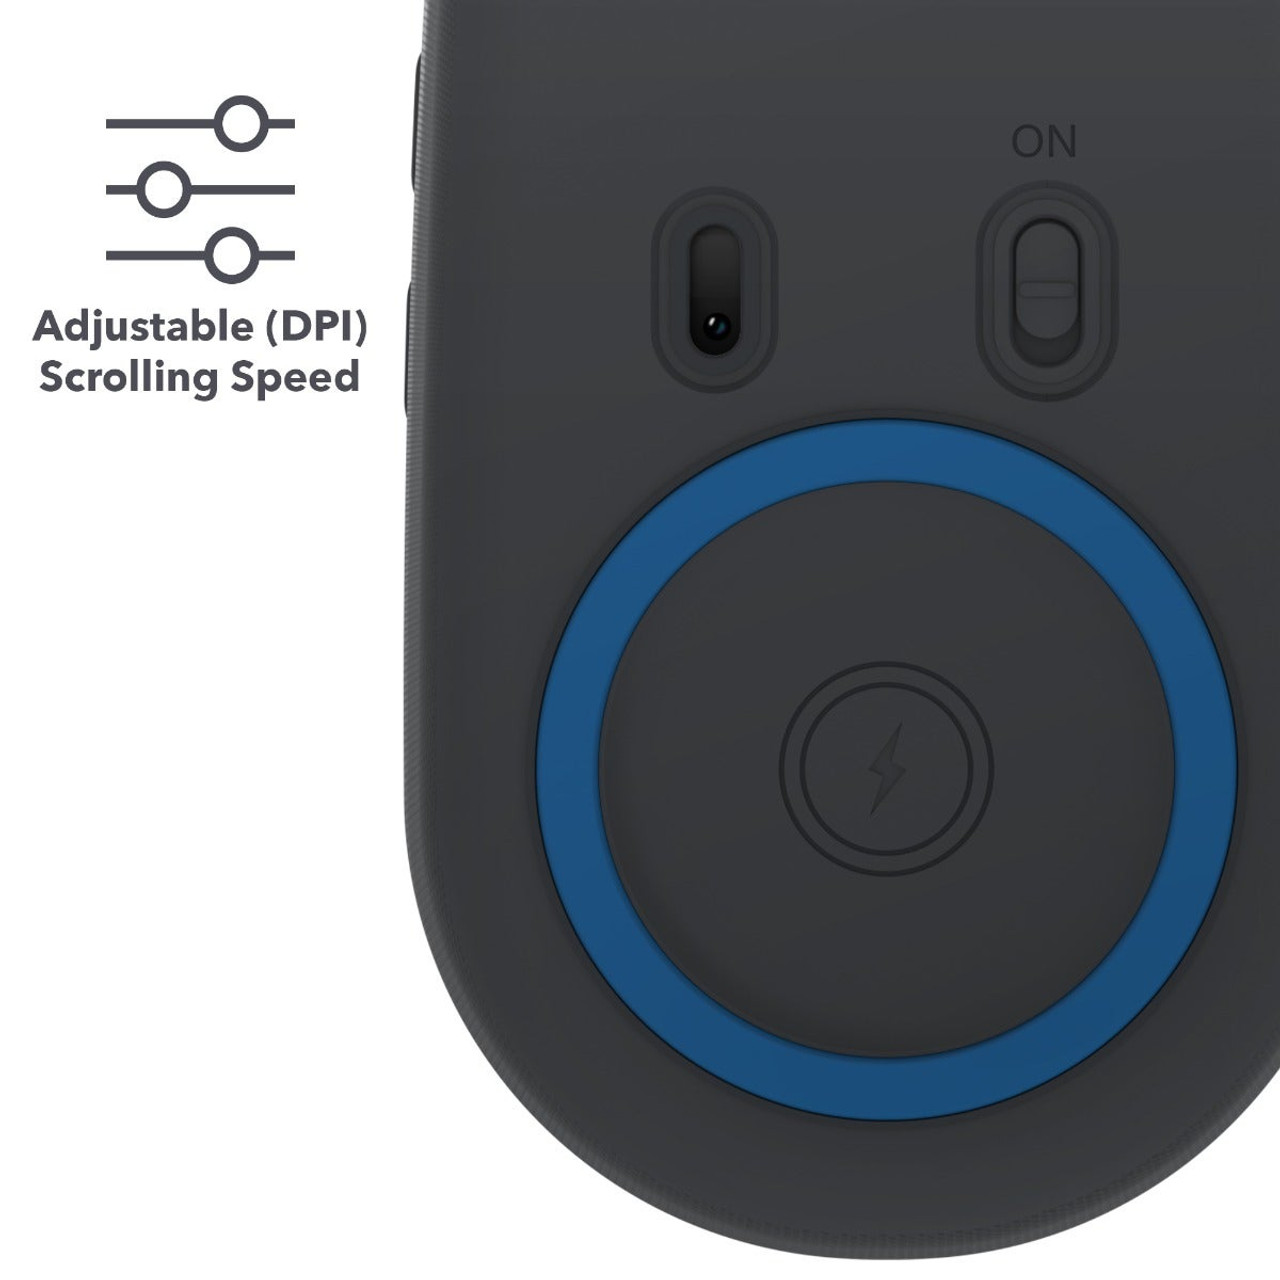 Chuột không dây Zagg Pro Mouse - sạc không dây chuẩn Qi - bảo hành 1 năm - hàng chính hãng